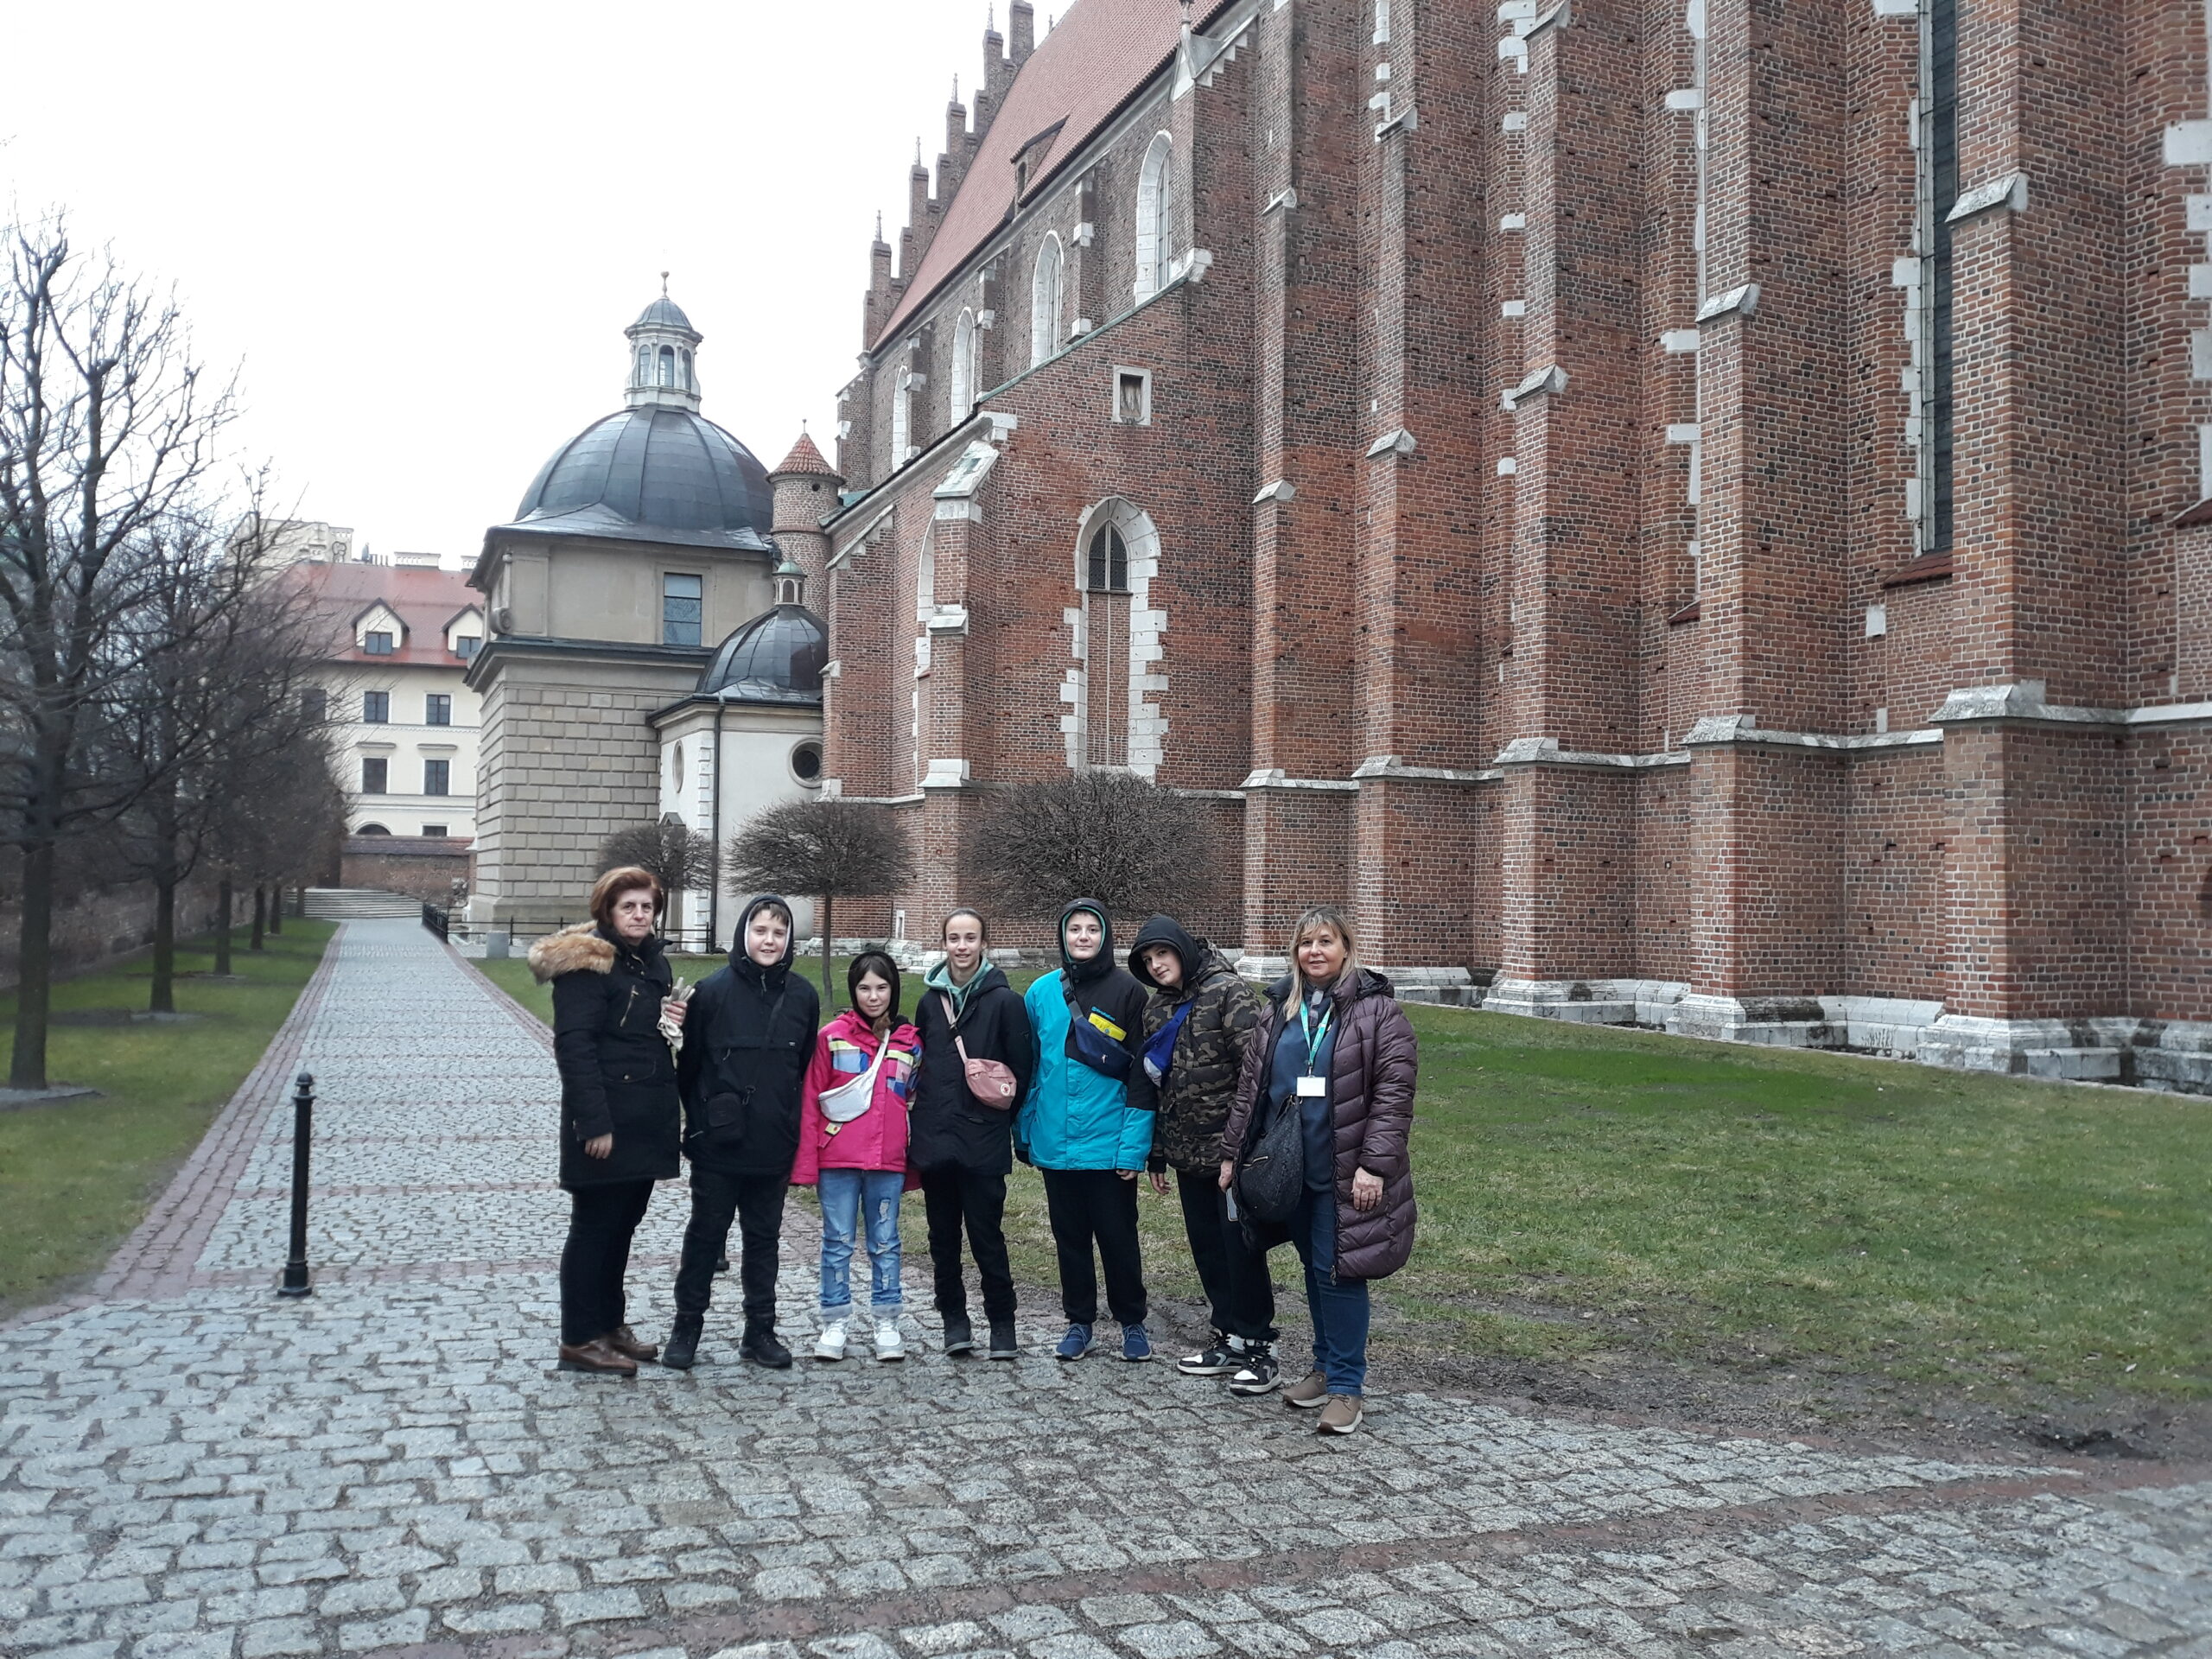 Μαθητές κι εκπαιδευτικοί του Γυμνασίου-Λ.Τ. Ευξεινούπολης στην Πολωνία για Erasmus+/KA2